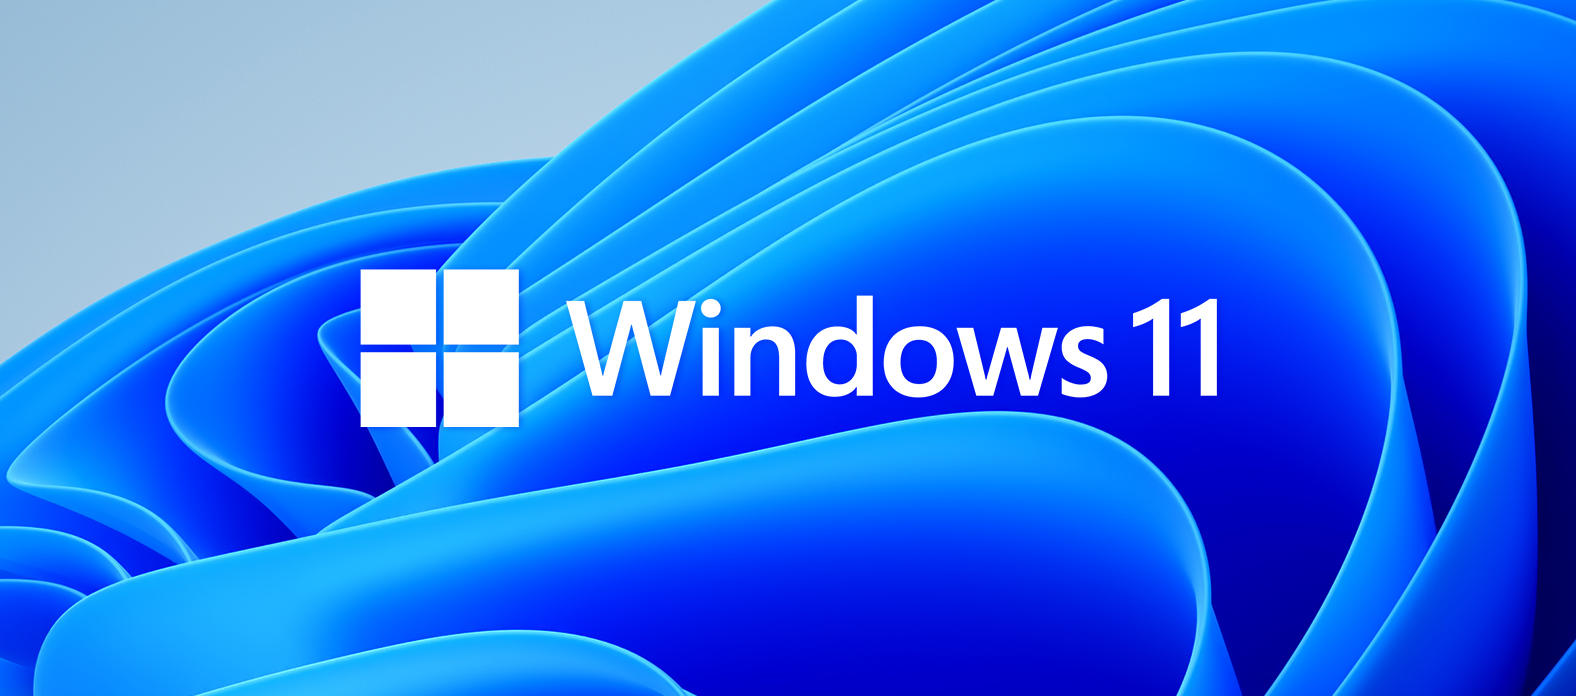 Készülj fel a Windows 11-re